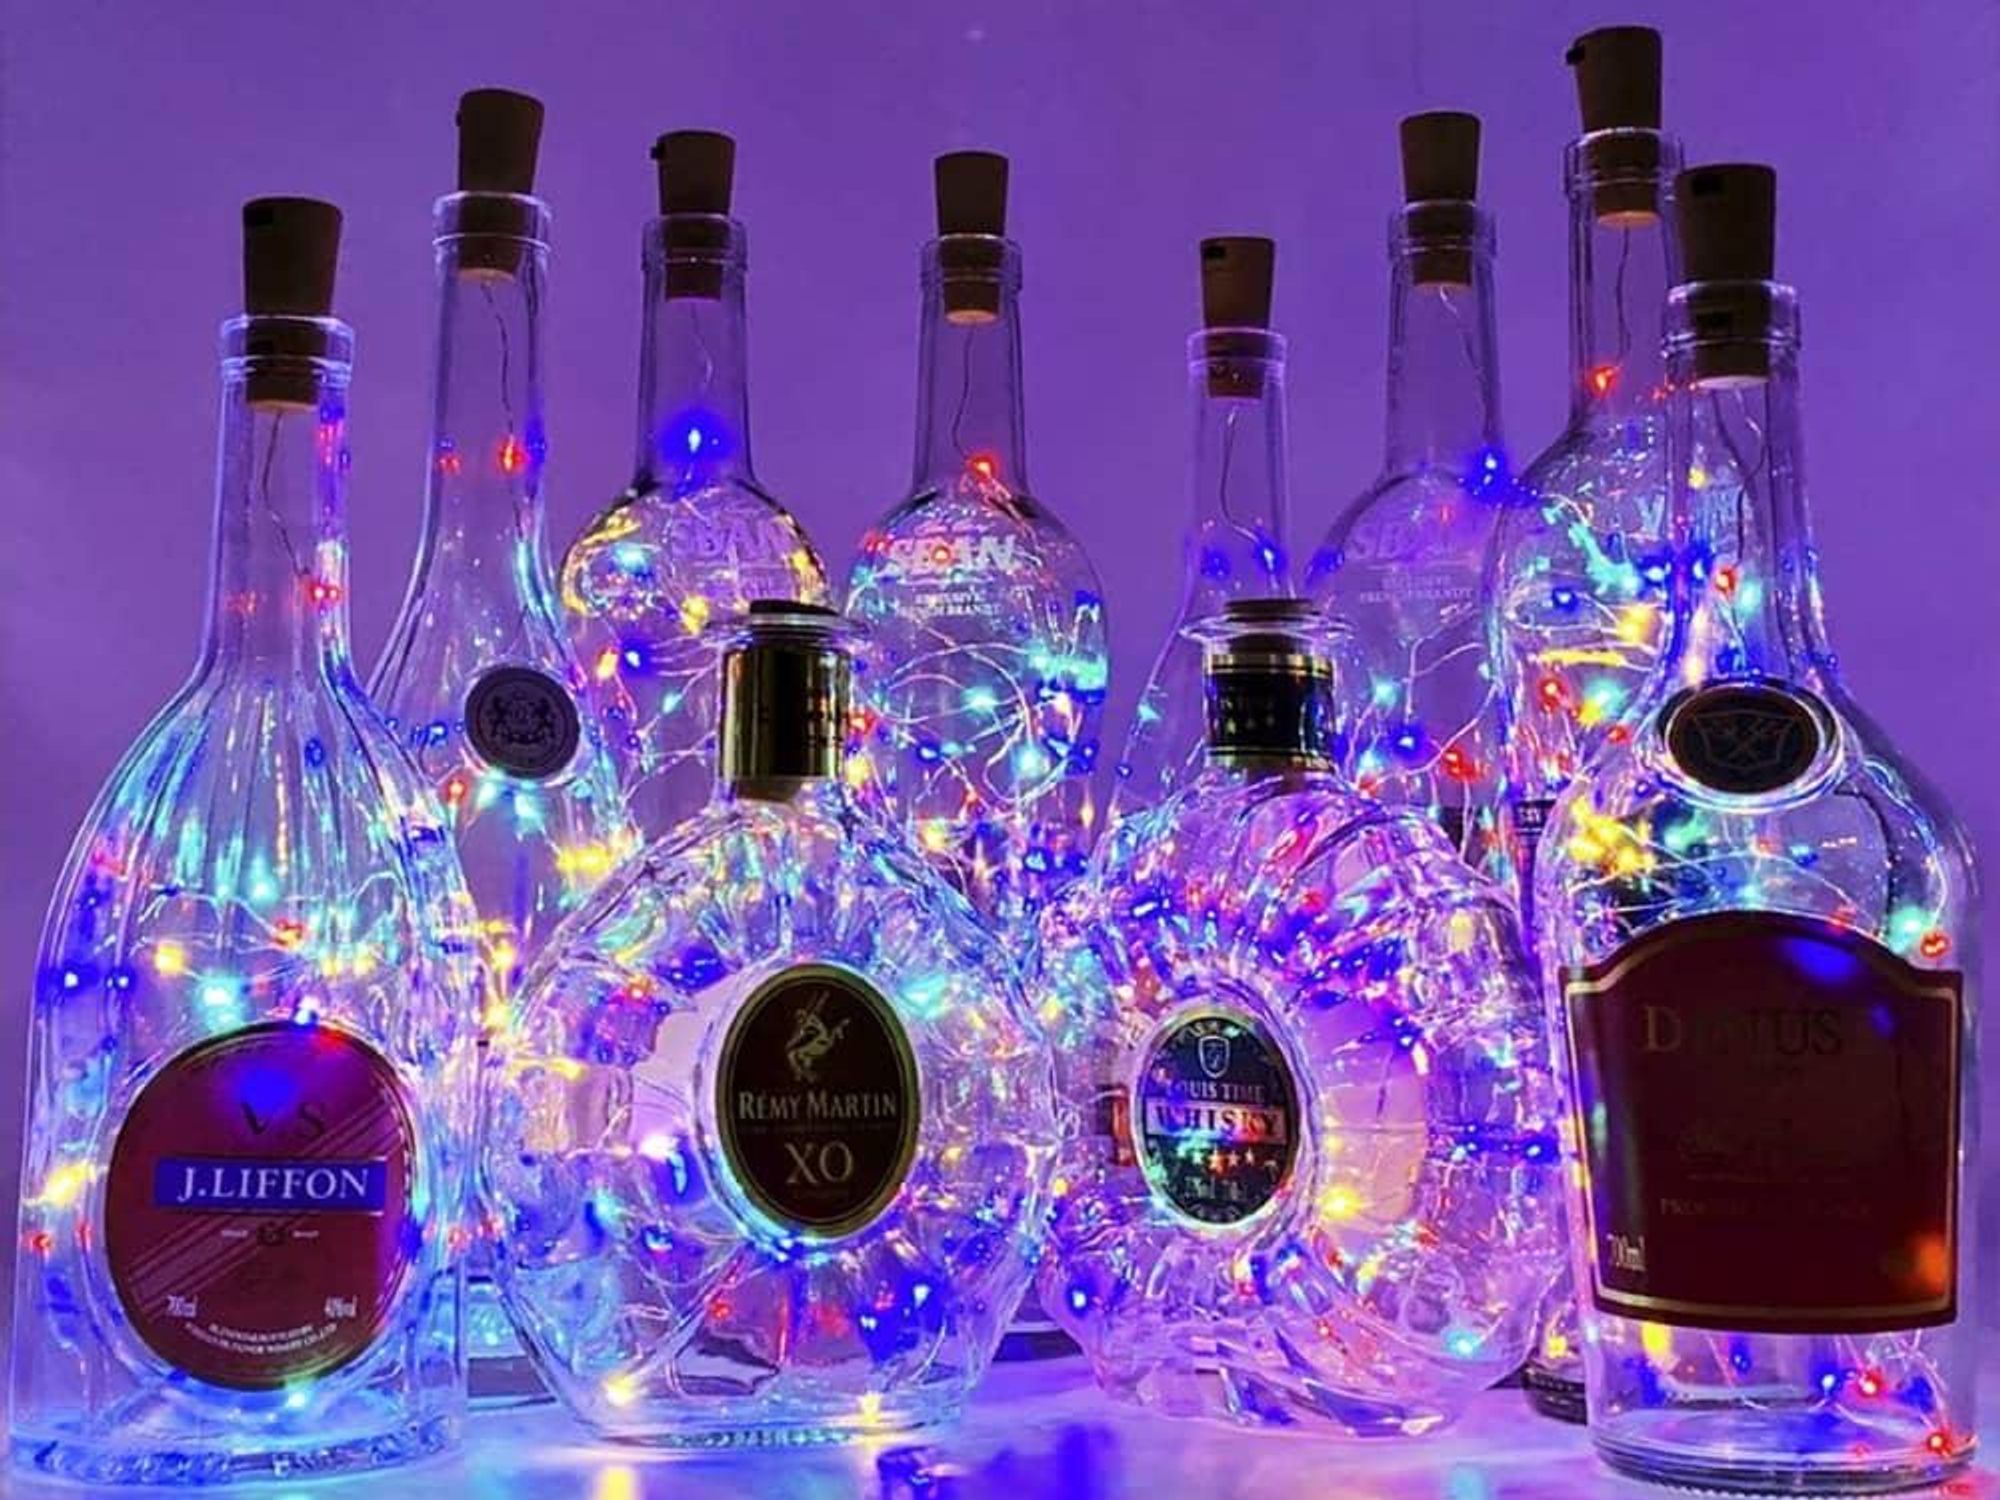 liquor bottles lit